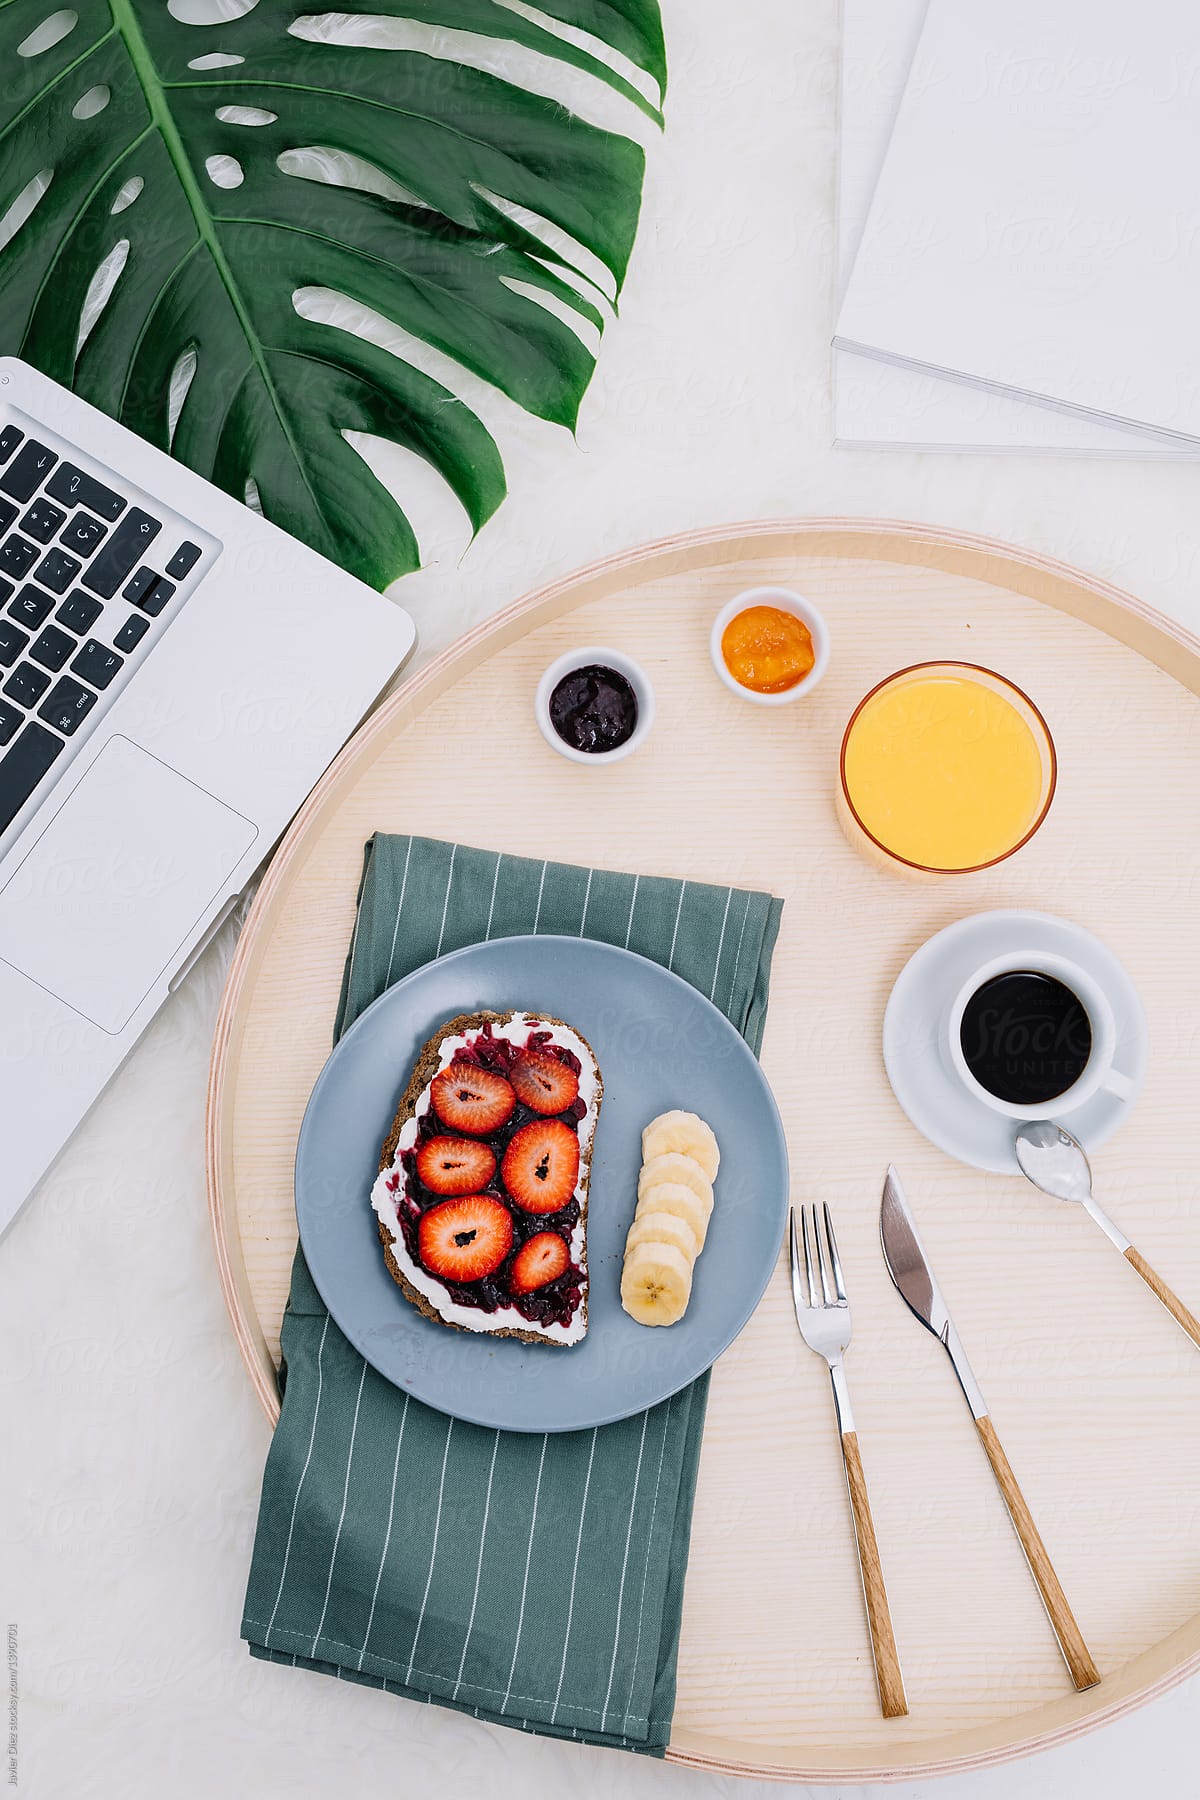 Crop laptop near tray with breakfast